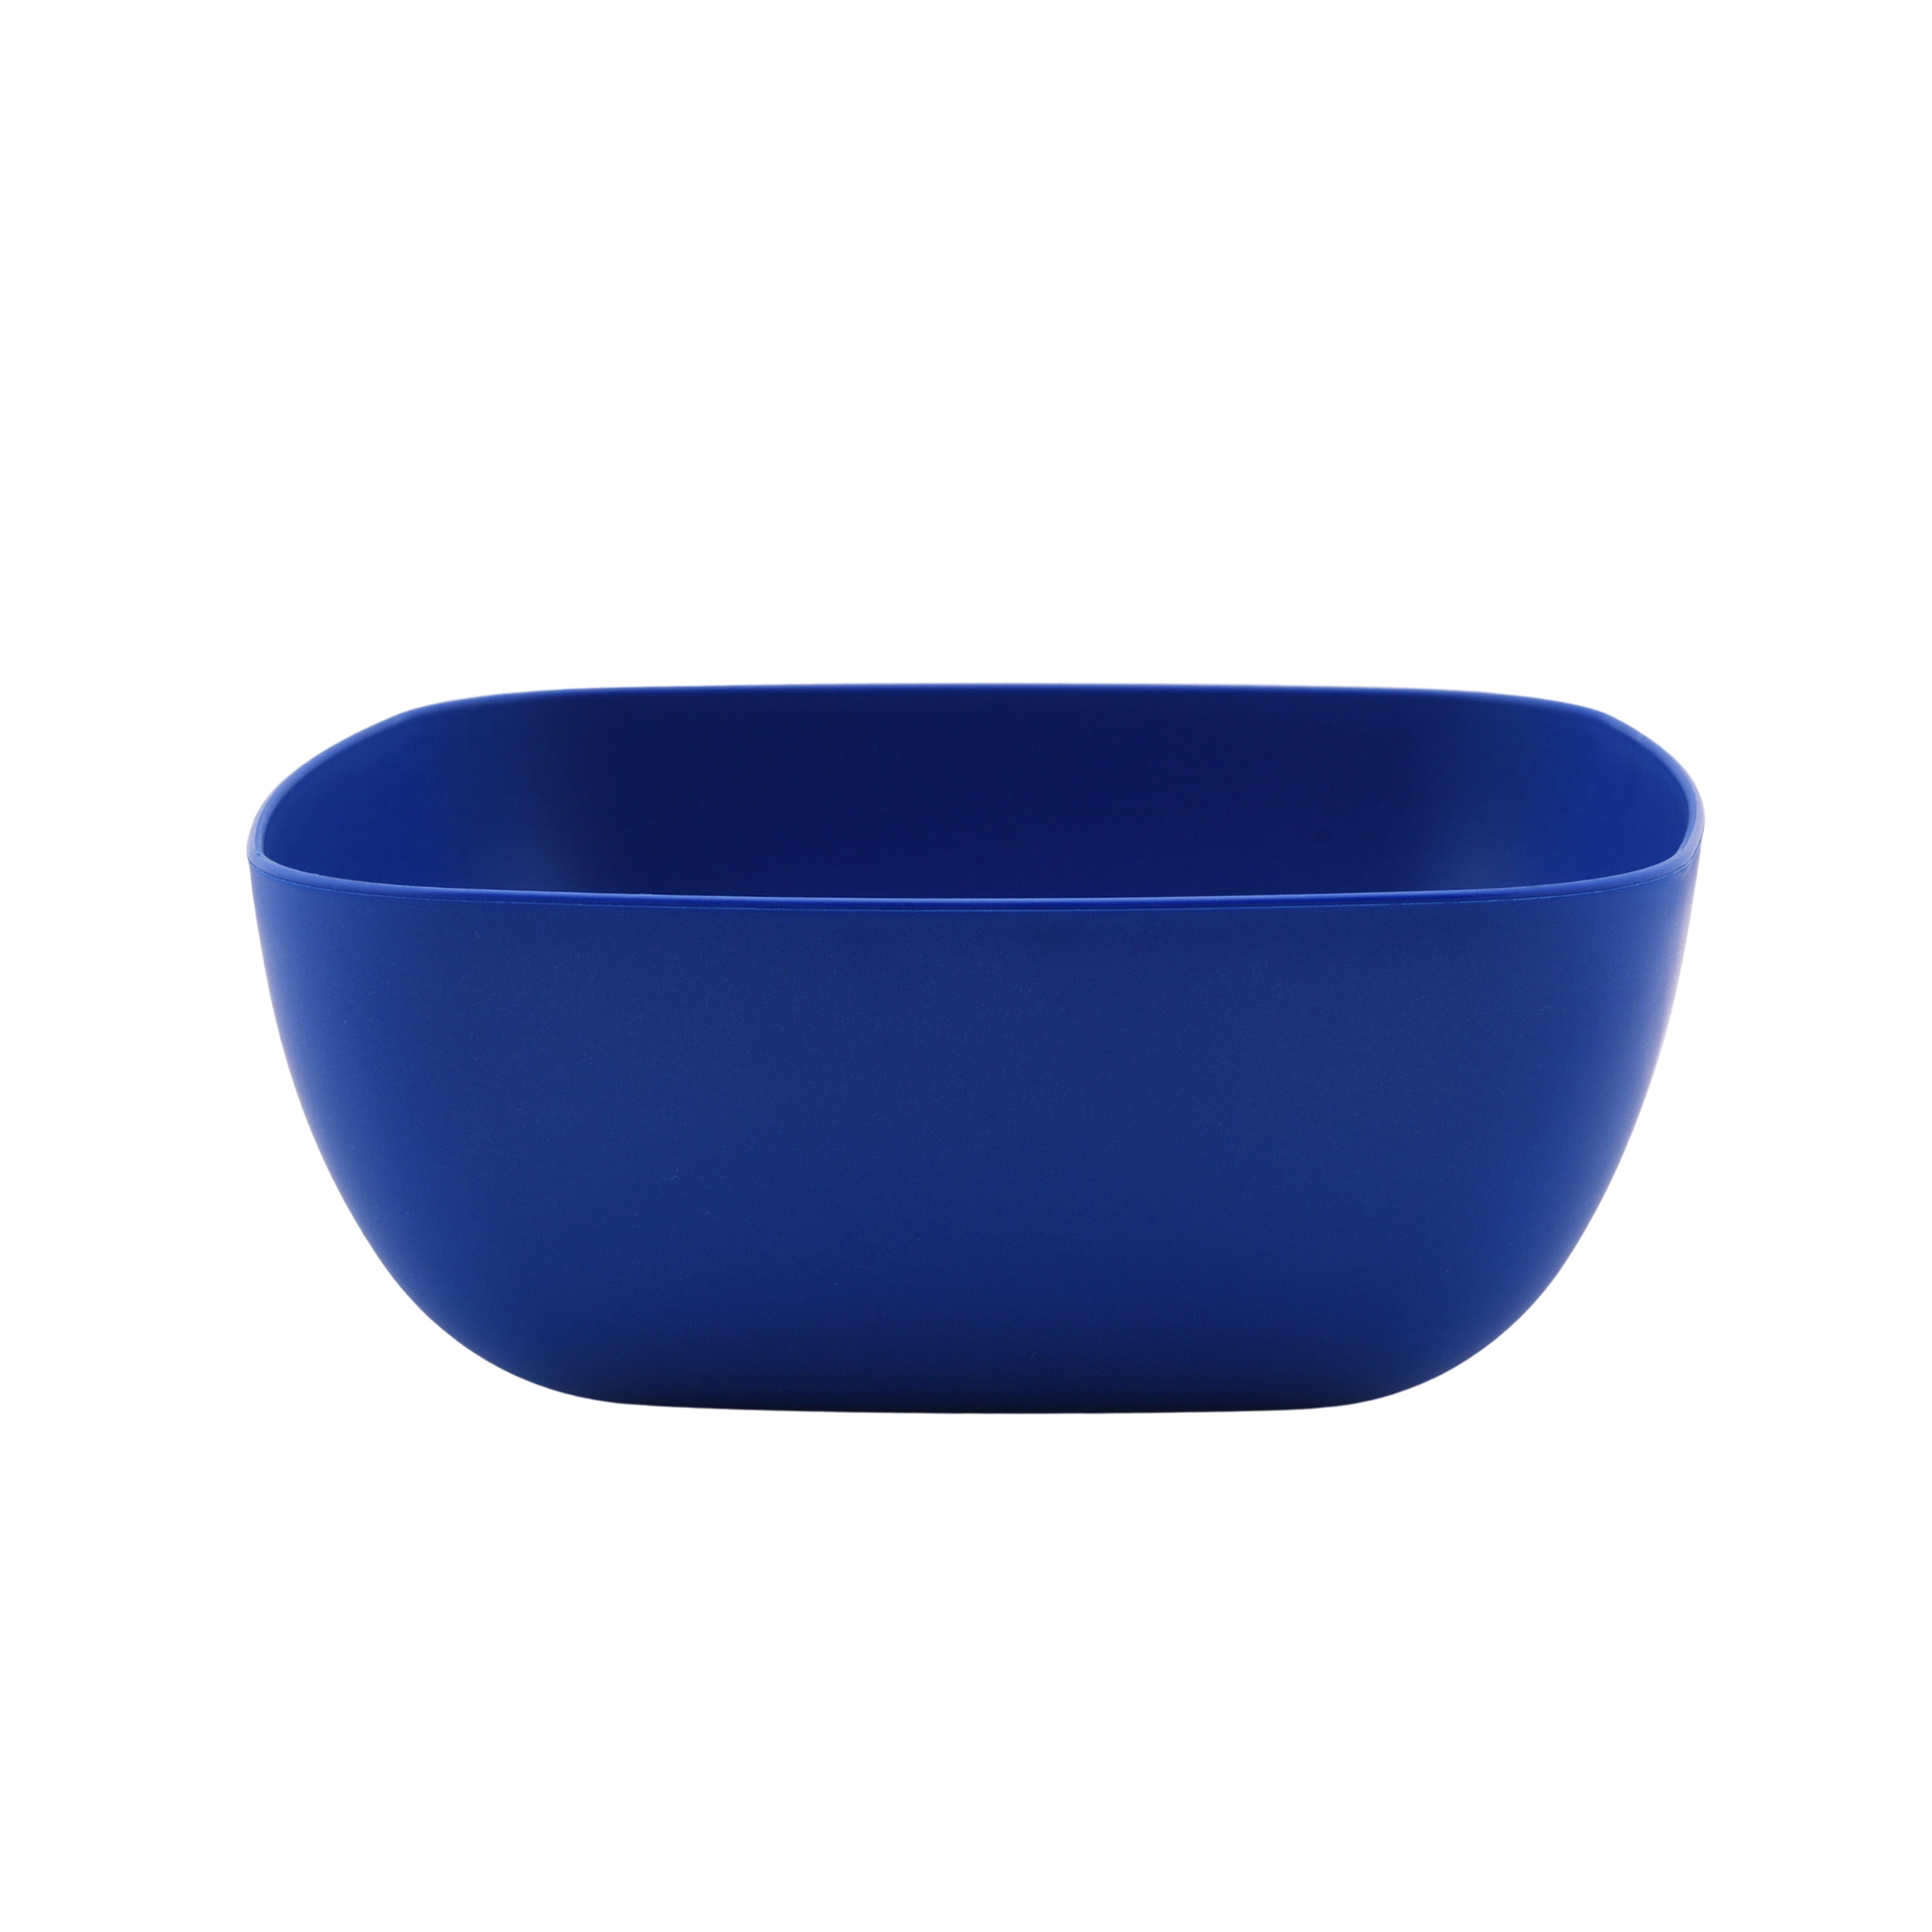 Details about   New 4 Pack Mainstays BPA Free Plastic Bowls 22.5 Fl Oz Dishwasher Safe Blue 